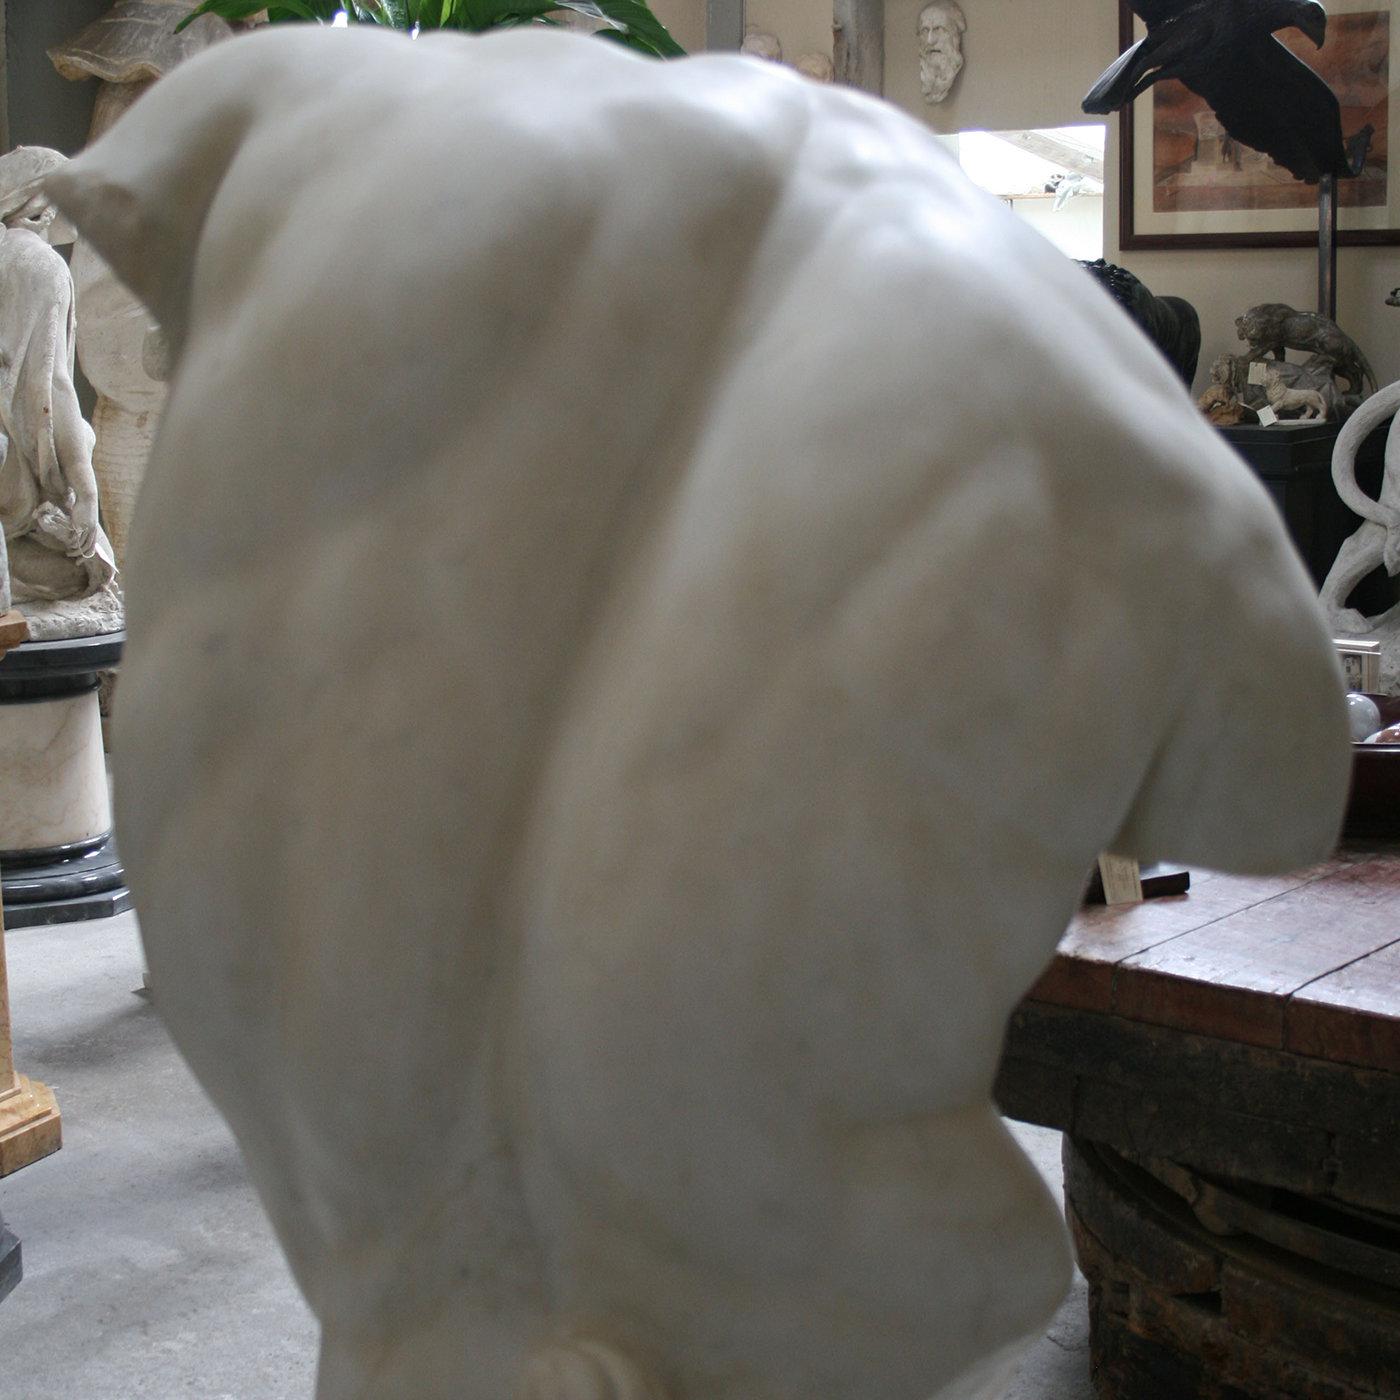 Eine Skulptur aus kostbarem weißem Carrara-Marmor, die den Torso Gaddi nachbildet, die berühmte fragmentarische Skulptur in den Uffizien in Florenz, die viele große Künstler der Renaissance, darunter Michelangelo, inspirierte. Wie in der Renaissance